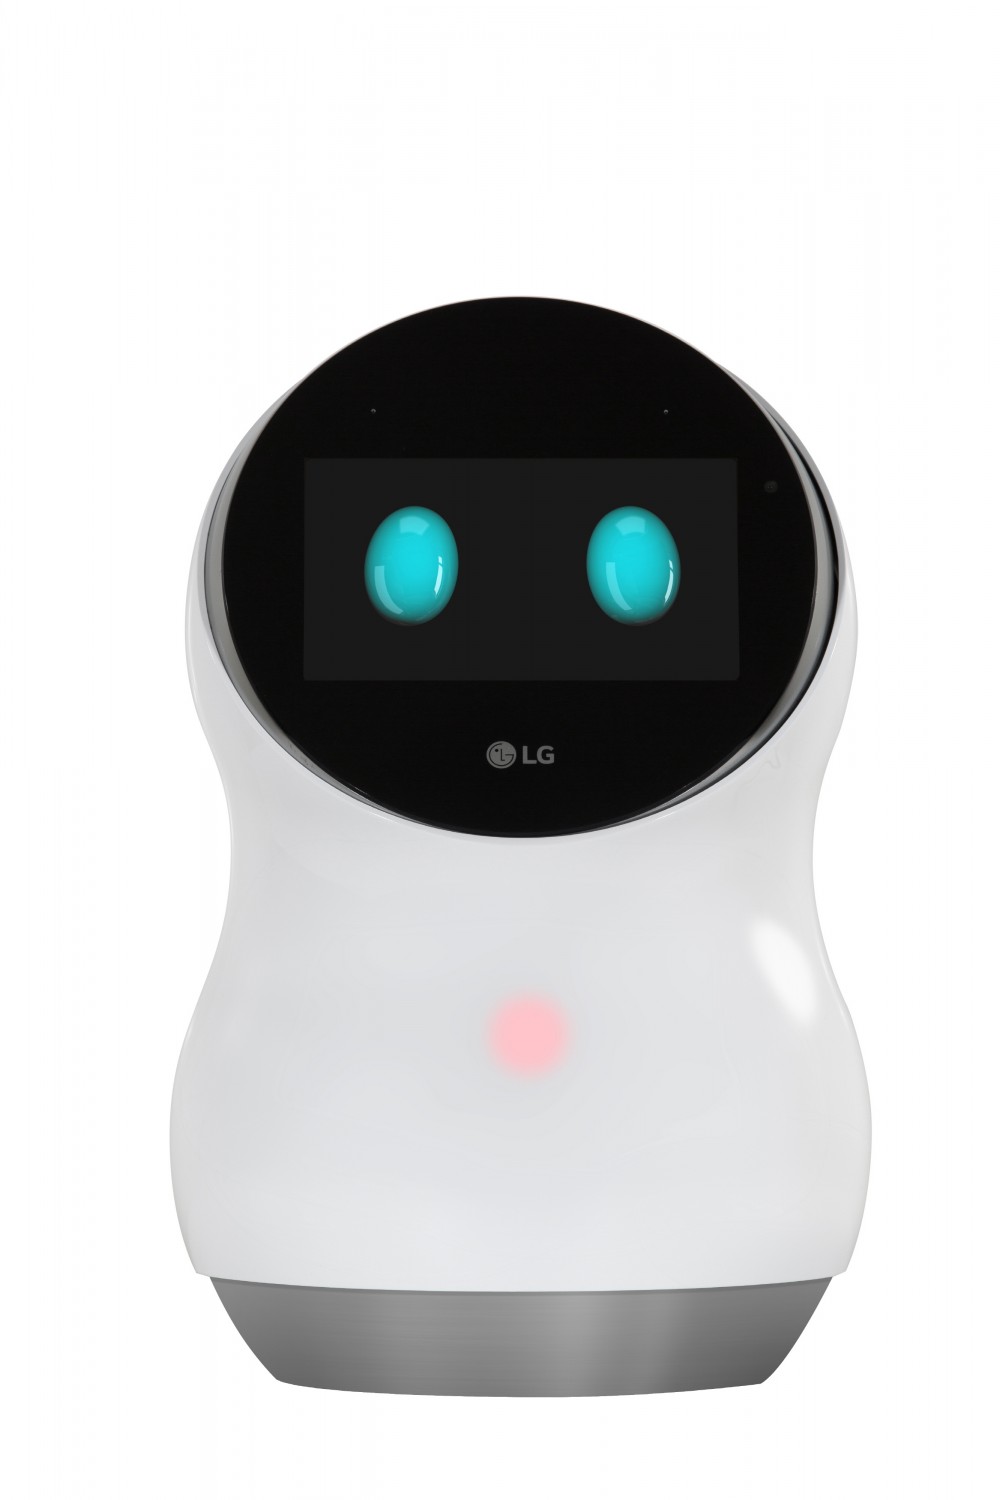 LG представляє нові моделі роботизованих продуктів